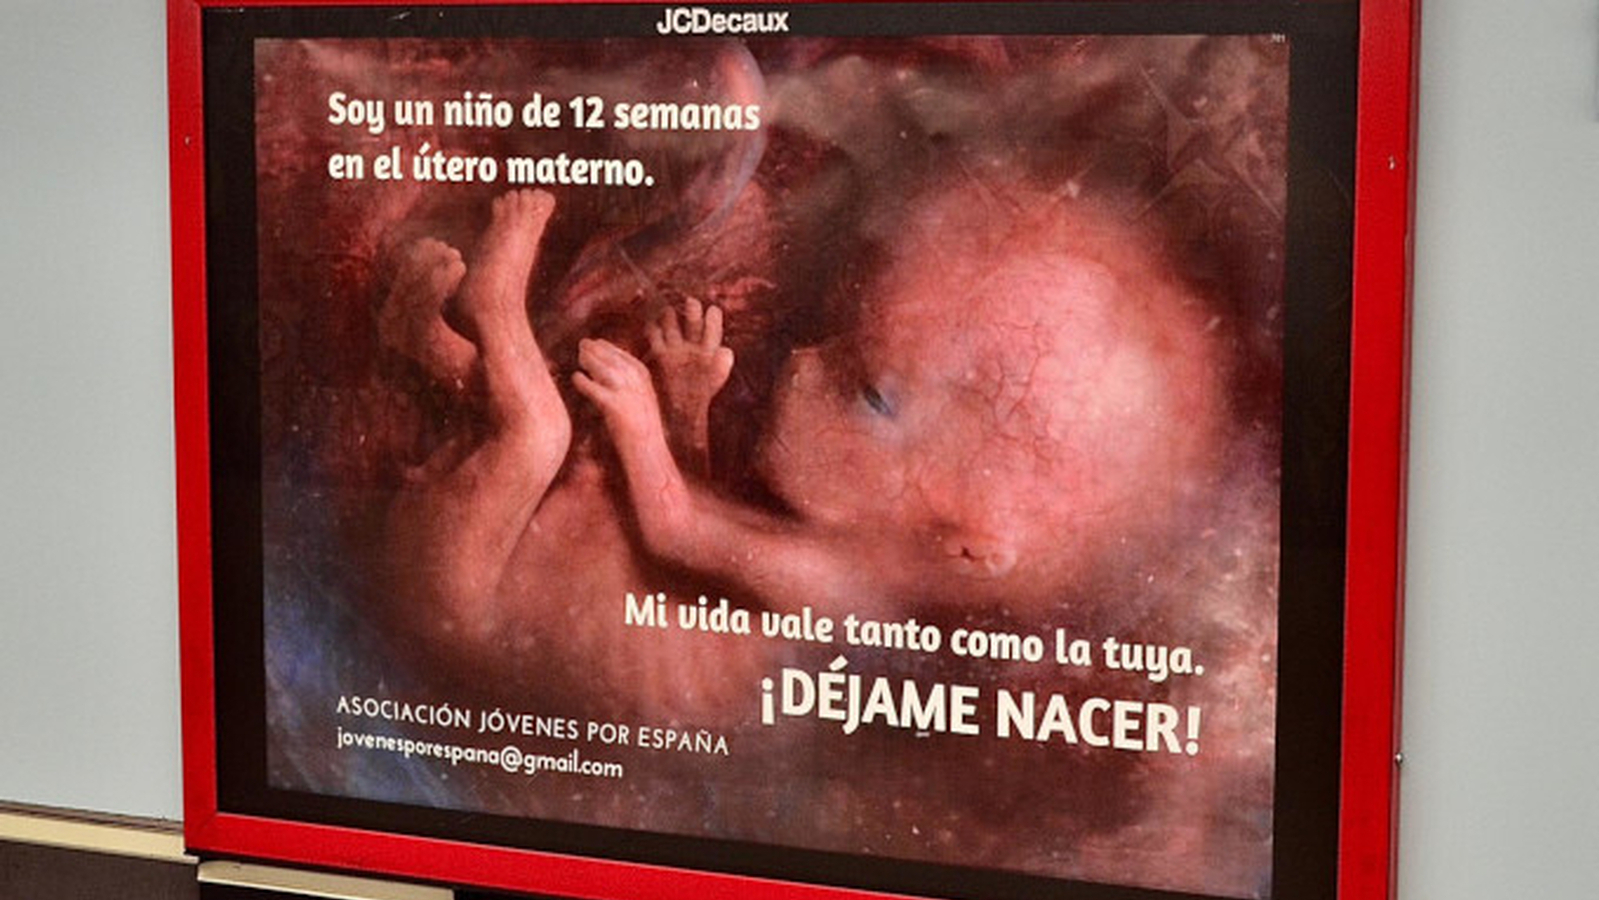 El número de abortos crece respecto al año anterior en España